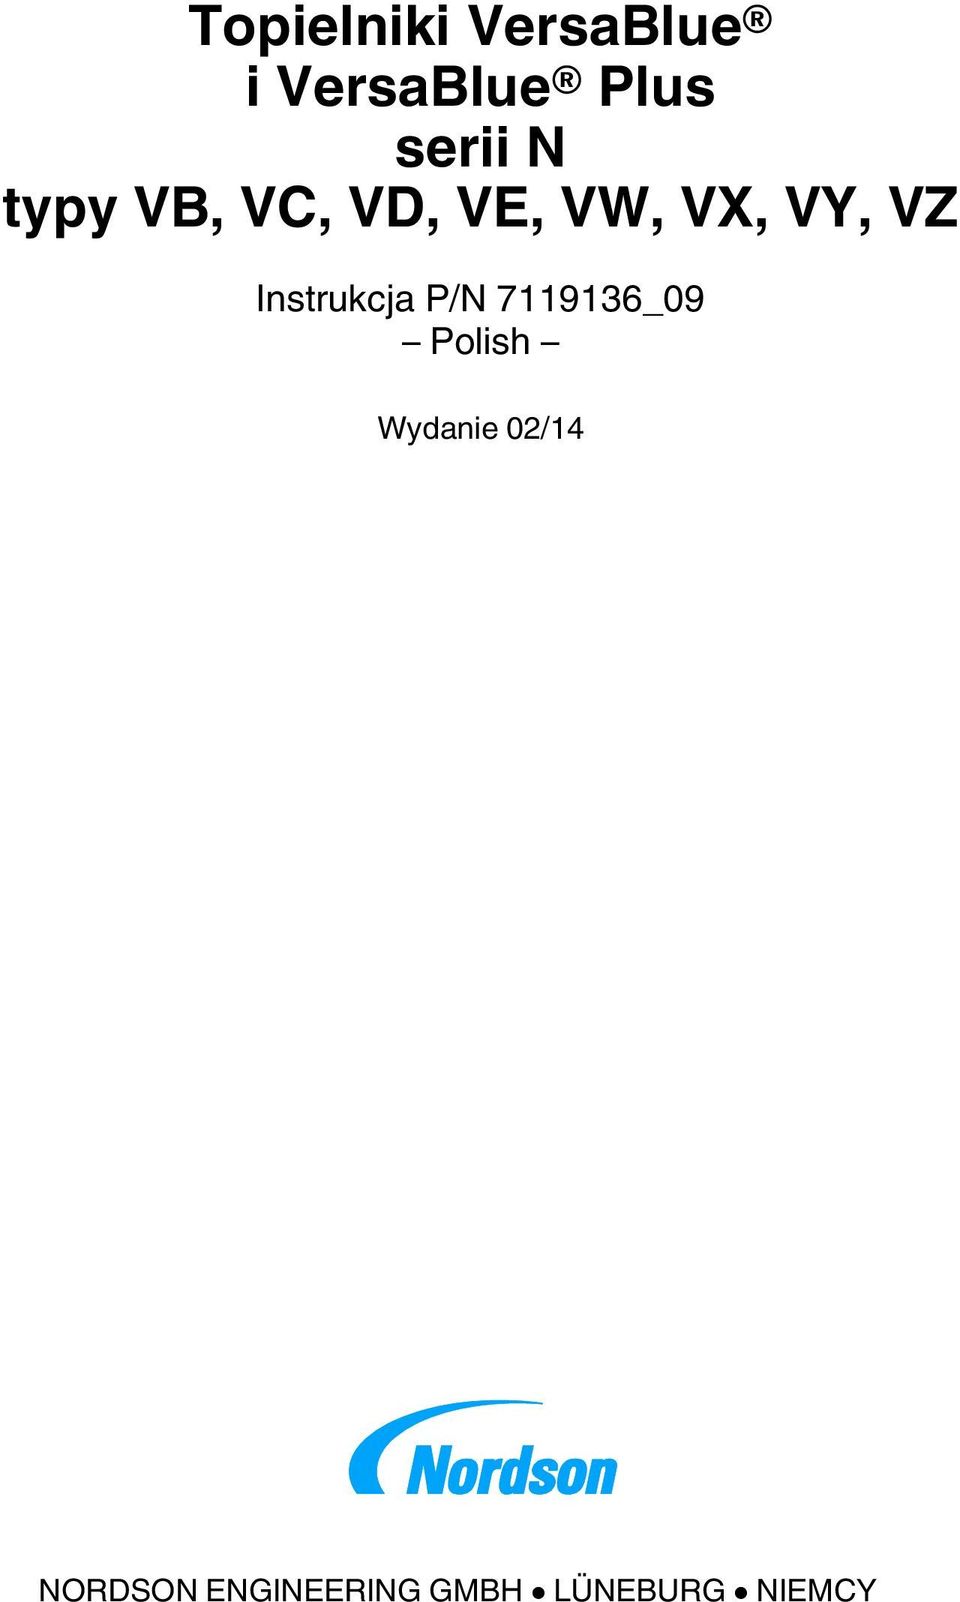 VY, VZ Instrukcja Polish Wydanie 02/14